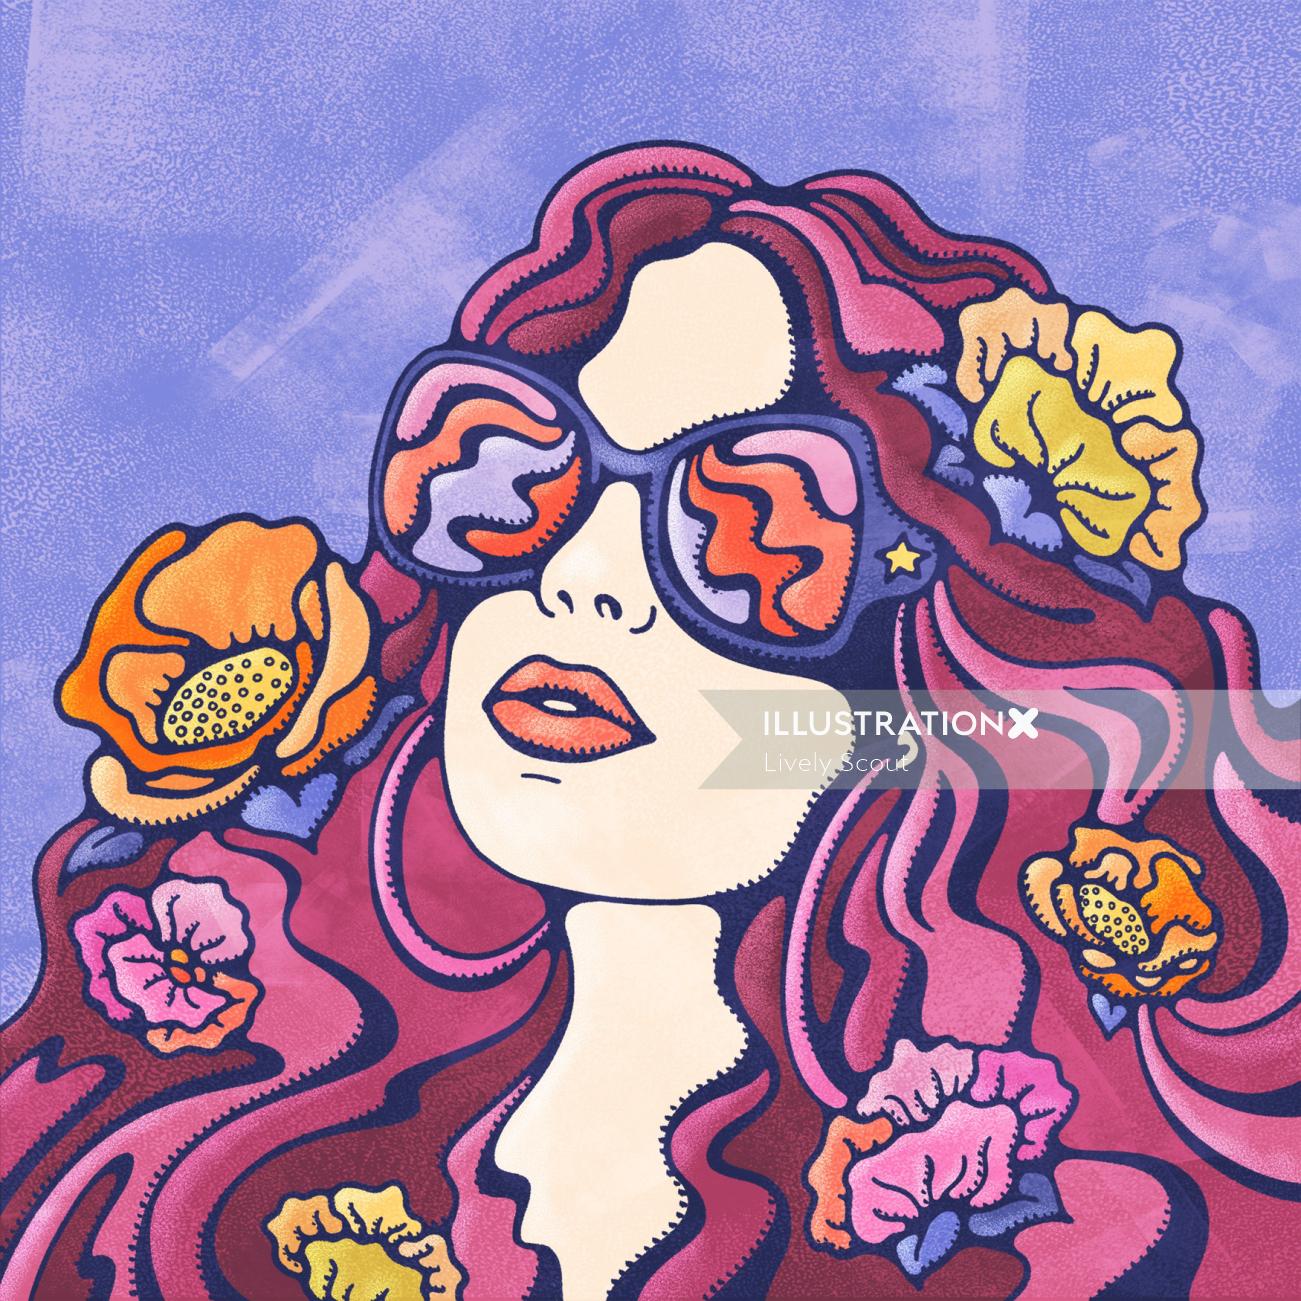 Mulher olhando para o sol de verão com óculos escuros, flores em seu cabelo ondulado luxuriante.